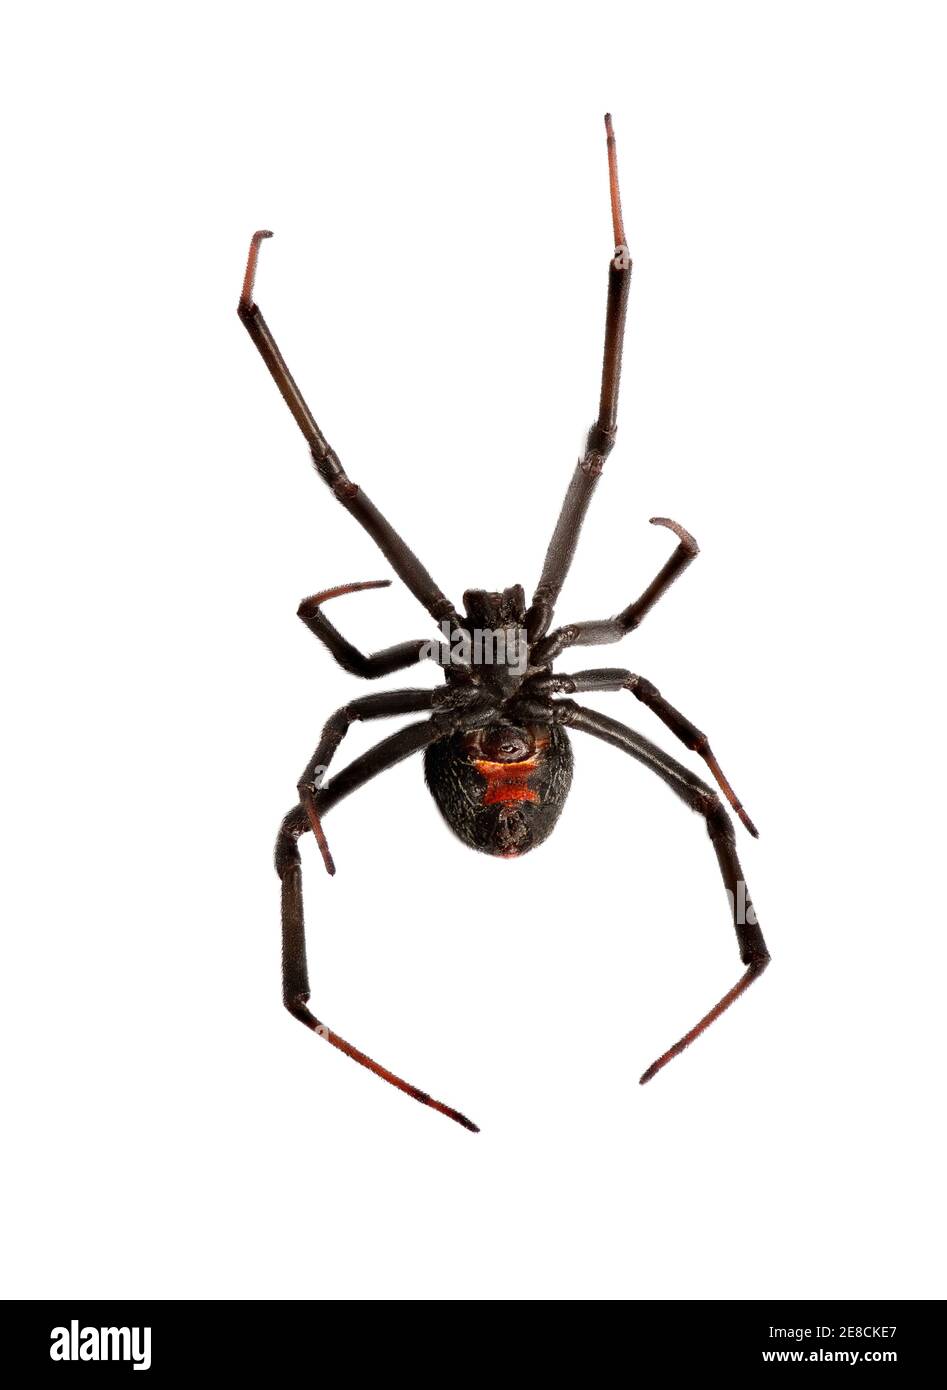 Araignée rouge arrière (wido noir) isolée sur le backgroung blanc Banque D'Images